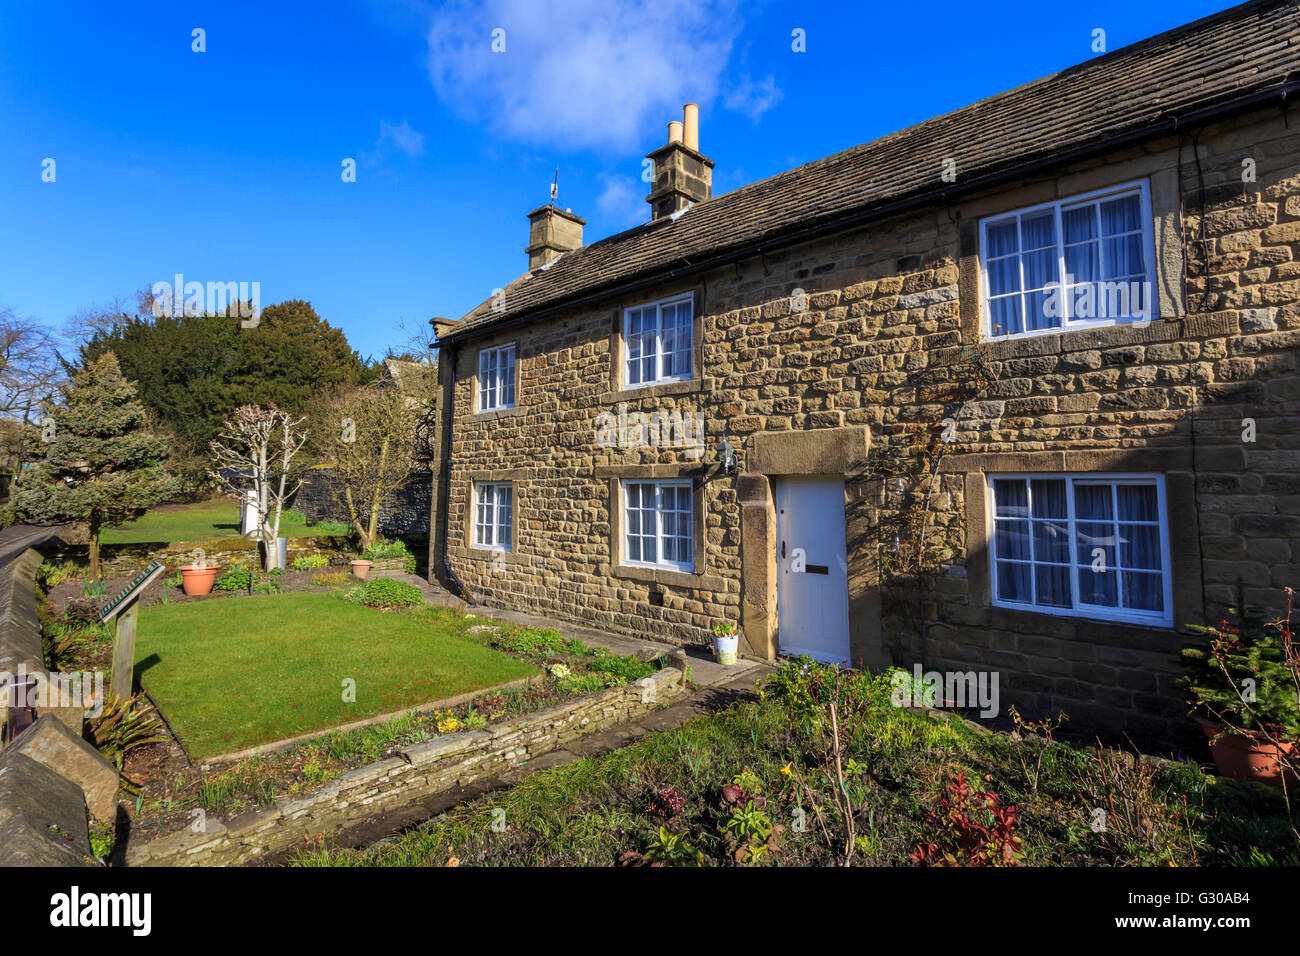 Rose Cottage, la peste, la peste Chalets Village, Eyam, parc national de Peak District, Derbyshire, Angleterre, Royaume-Uni, Europe Banque D'Images